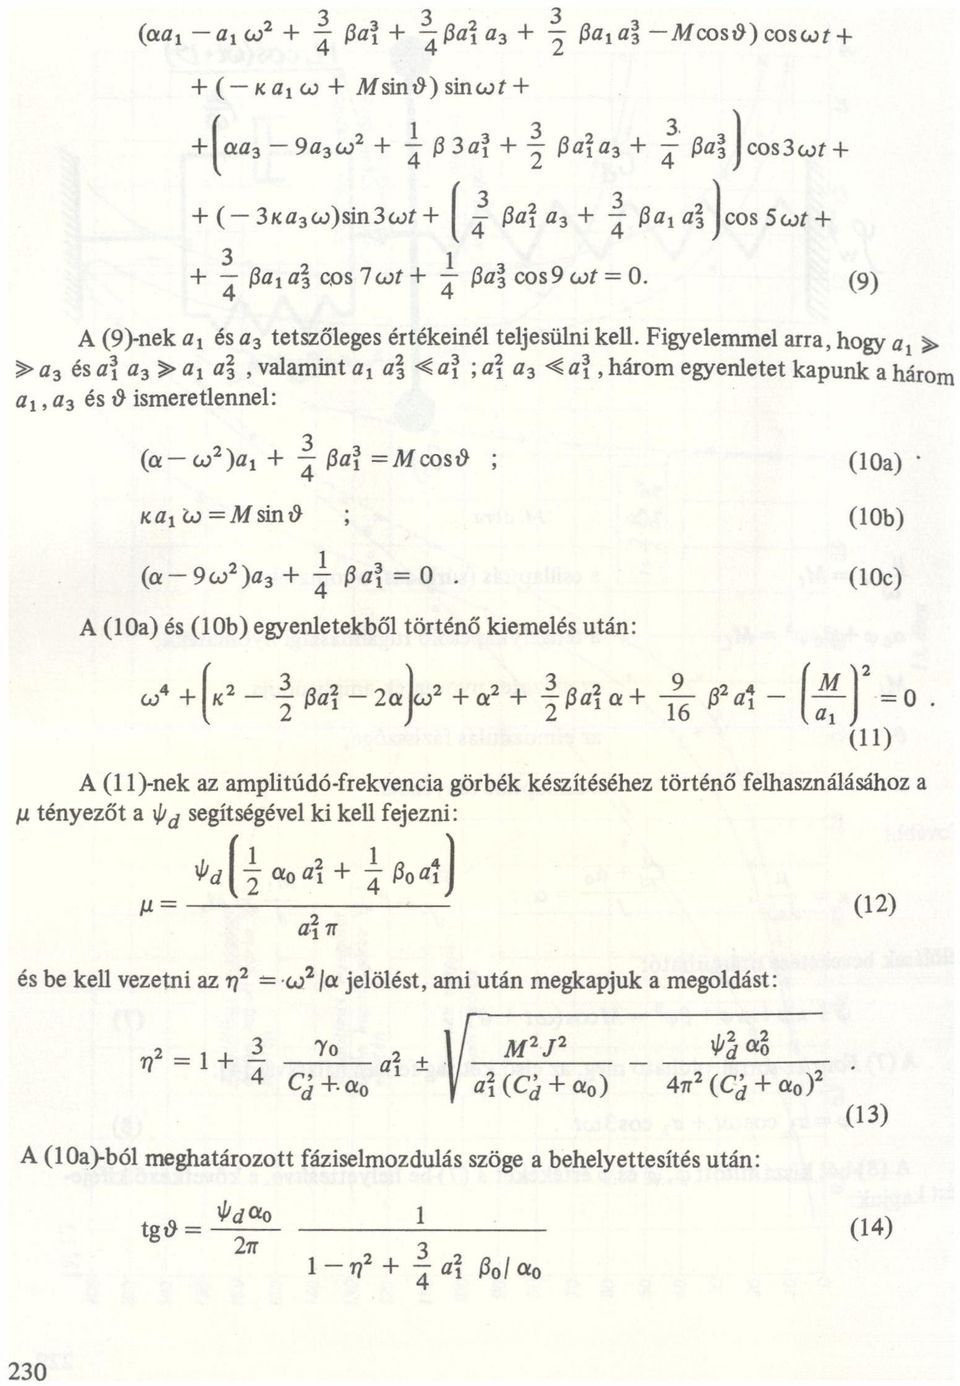 , három egyenletet kpunk három,, ; és 29 ismeretlennel: (w2), + 3 Z H? =Moosz9 ; (10) K1w=MSÍIlt9 ; (10b) l (9w2)3 + í H?